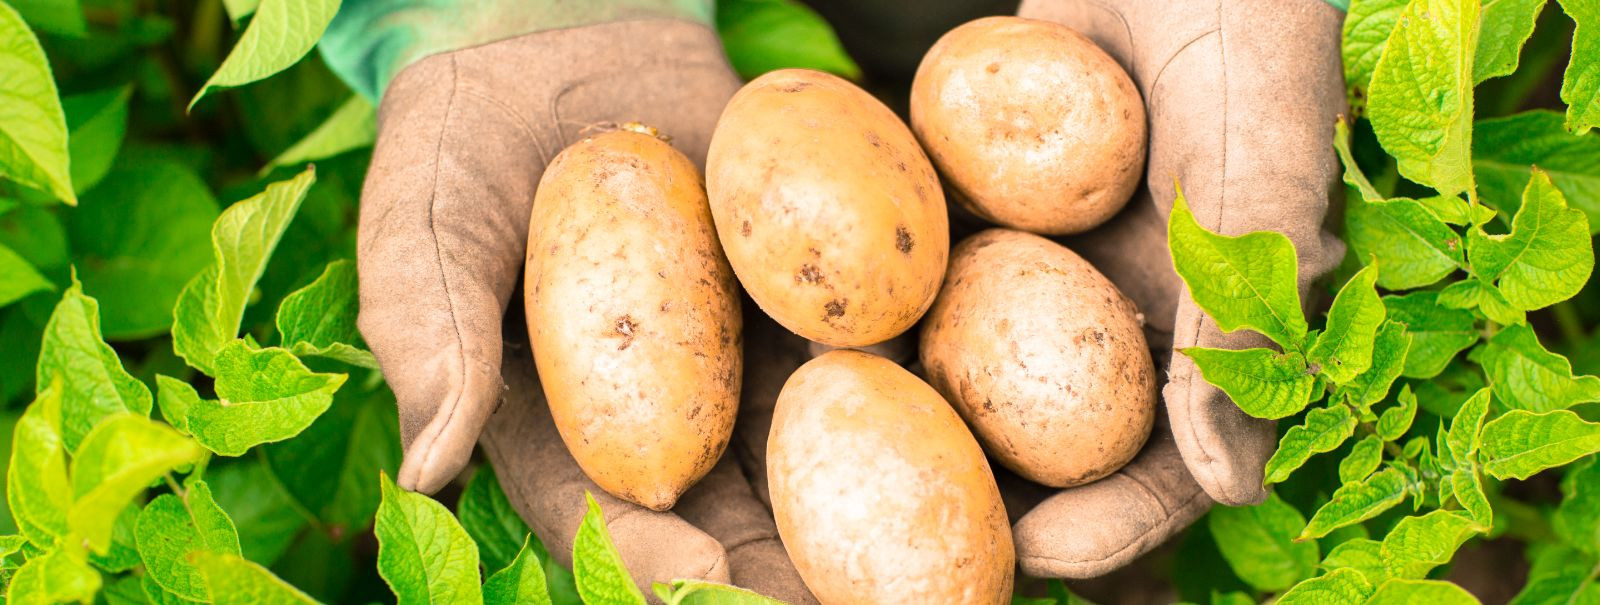 Seemnekartulid ei ole lihtsalt suvalised kartulid, vaid need on spetsiaalselt kasvatatud haigustevabaks ja tervislikuks alguseks järgmisele saagile. Need on tei